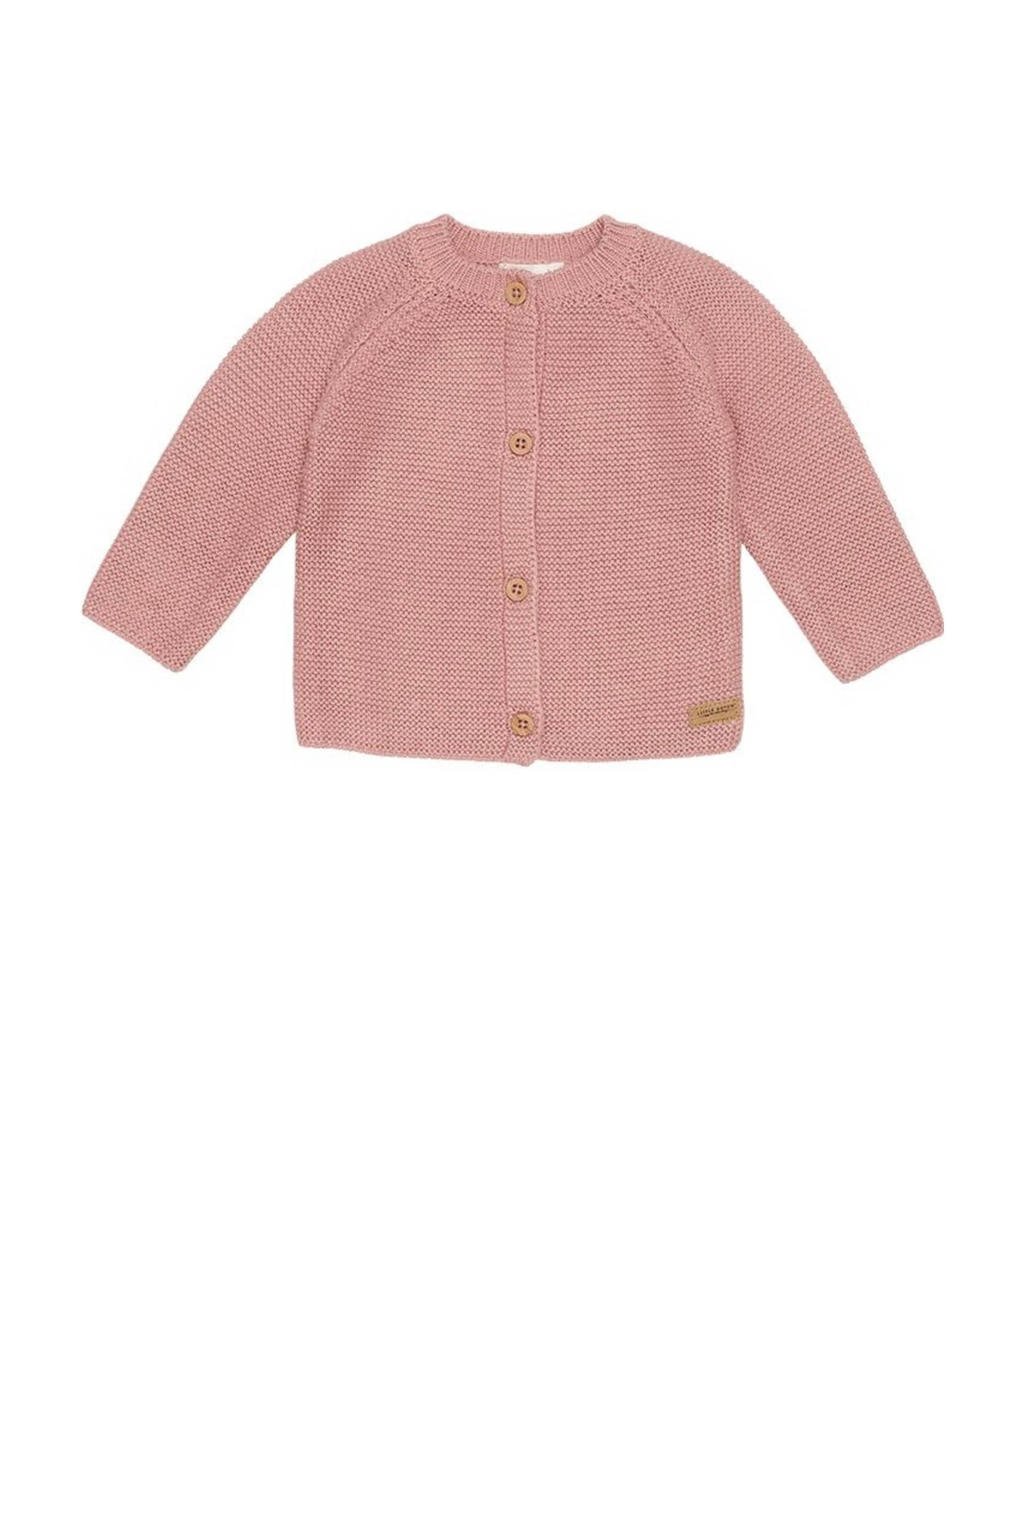 Roze meisjes Little Dutch gebreid baby vestje vintage van katoen met lange mouwen, ronde hals en knoopsluiting